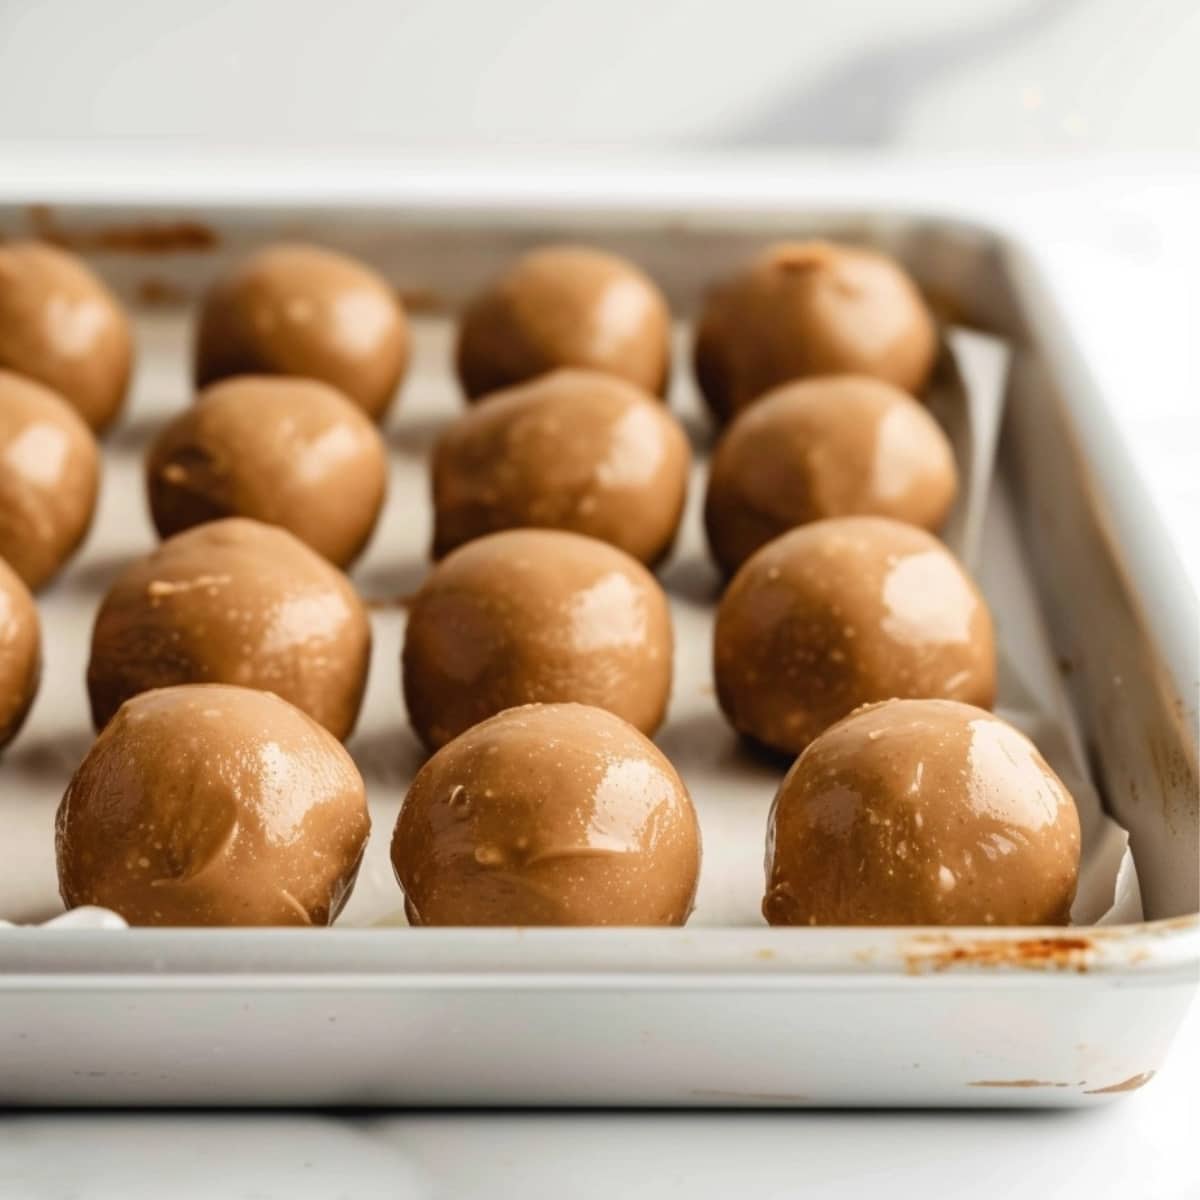 Peanut butter balls dough arranged in a baking sheets.